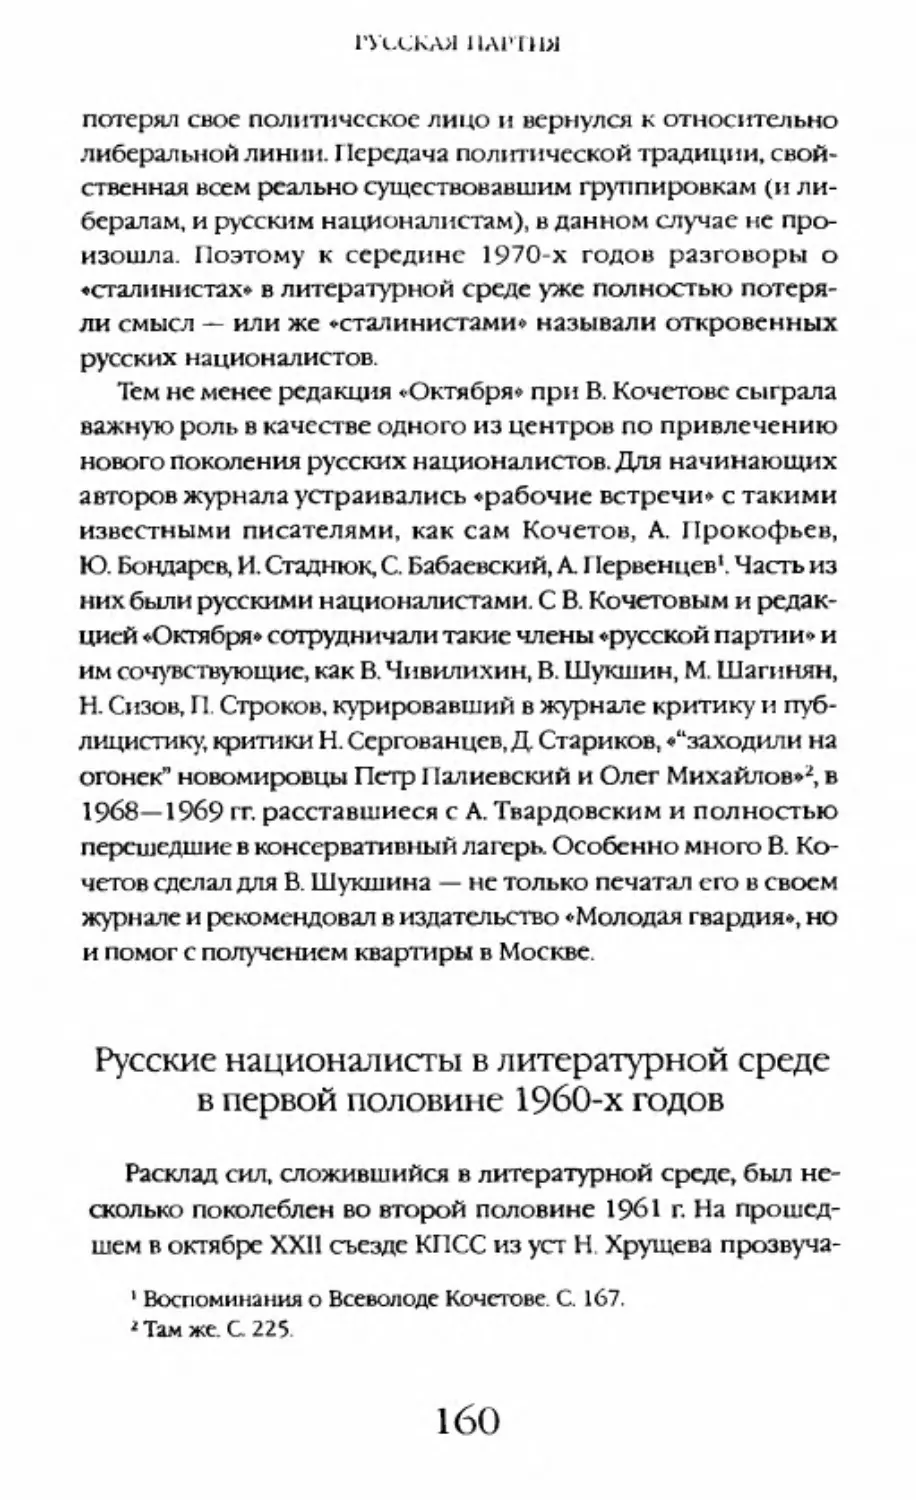 Русские националисты в литературной среде в первой половине 1960-х годов